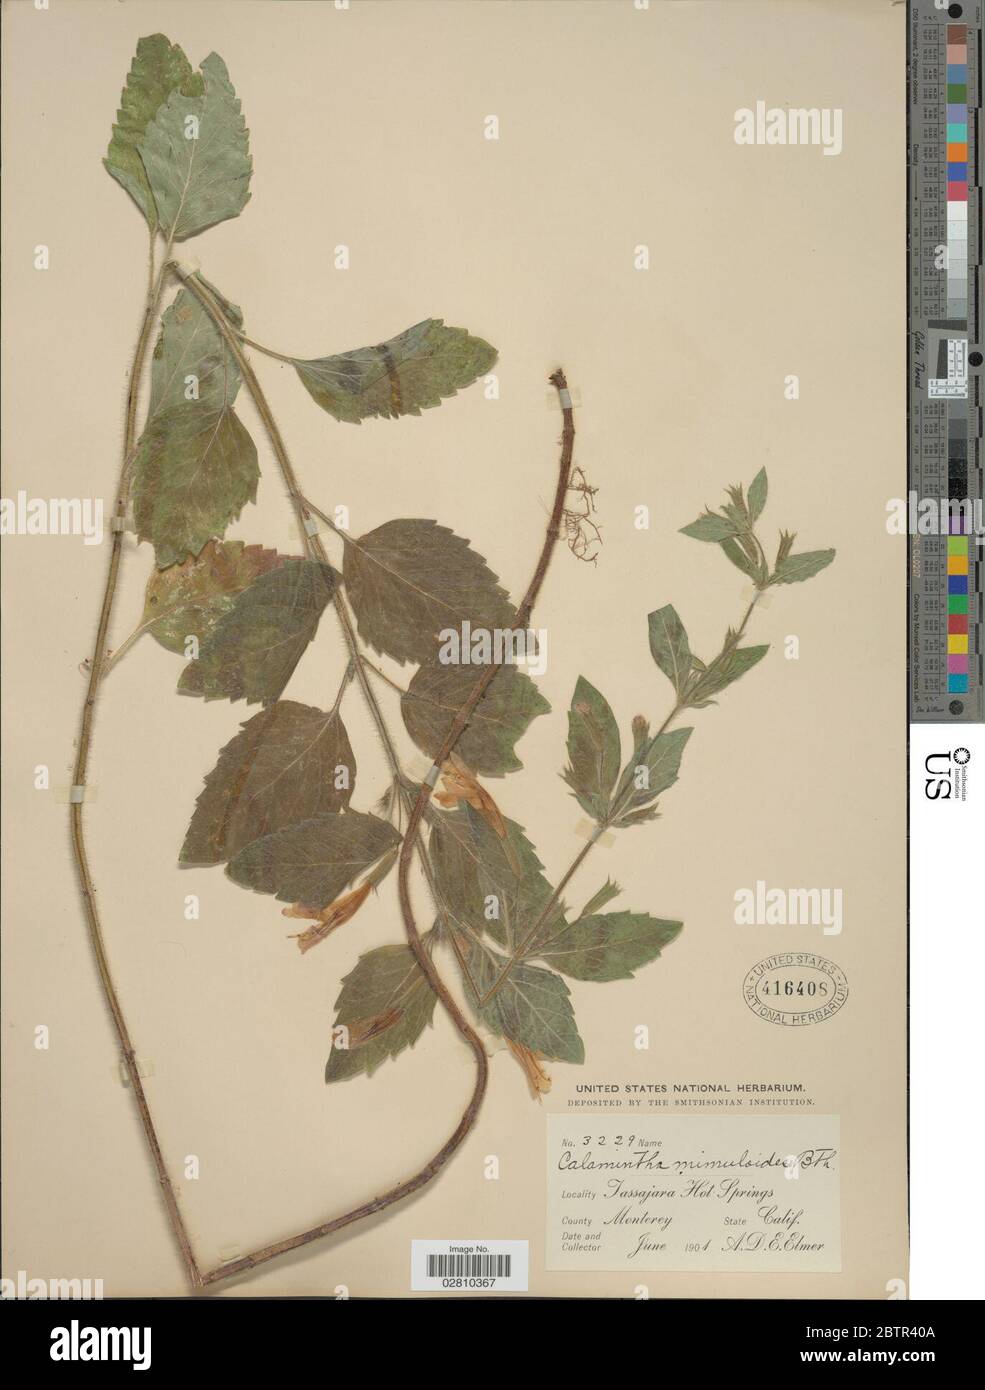 Clinopodium mimuloides Benth Kuntze. Stock Photo